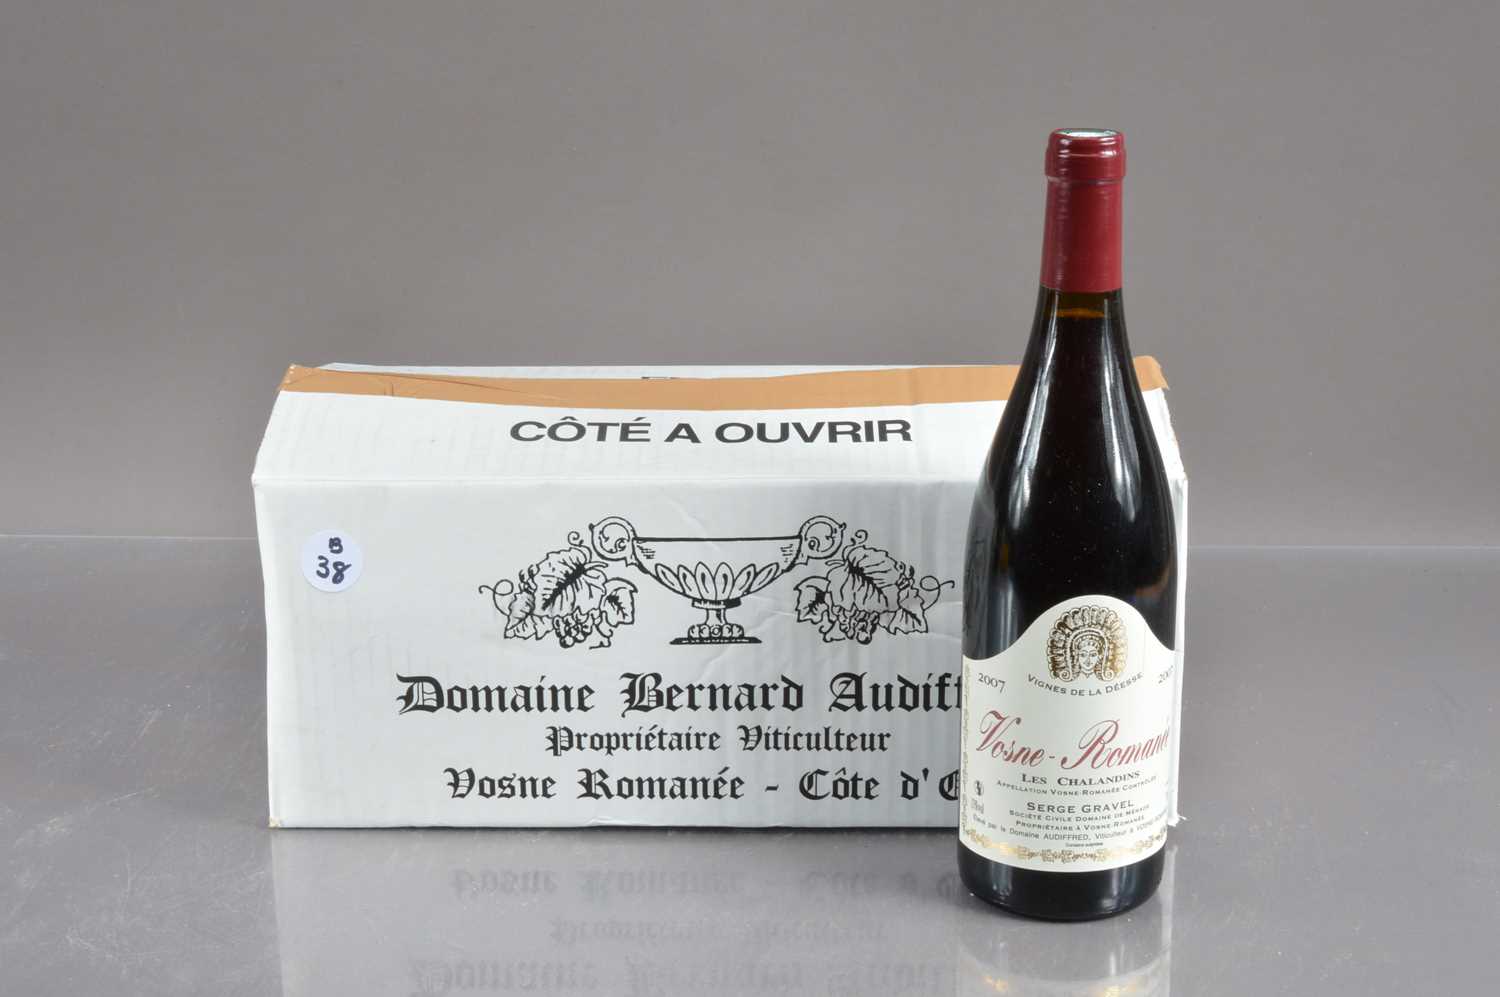 Six bottles of Vosne Romanee 'Les Chalandins' 2007,